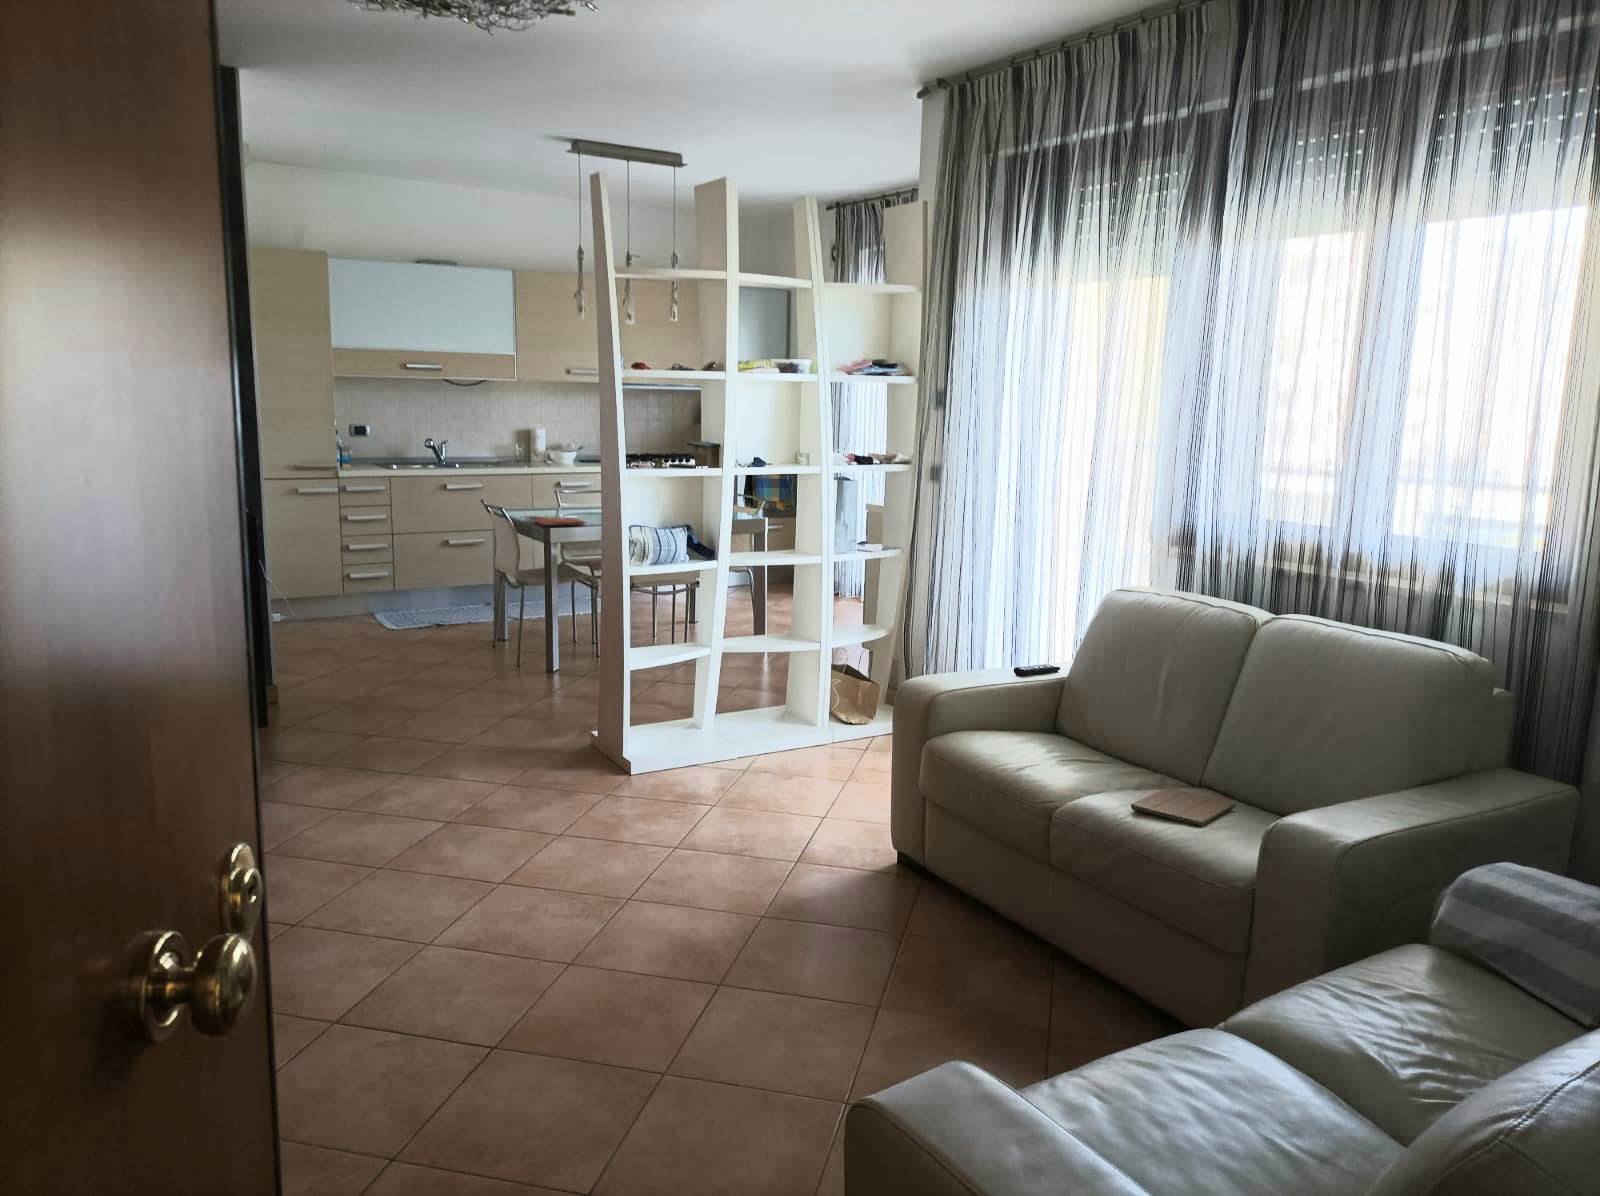 Appartamento in affitto a Monopoli, 3 locali, prezzo € 800 | PortaleAgenzieImmobiliari.it